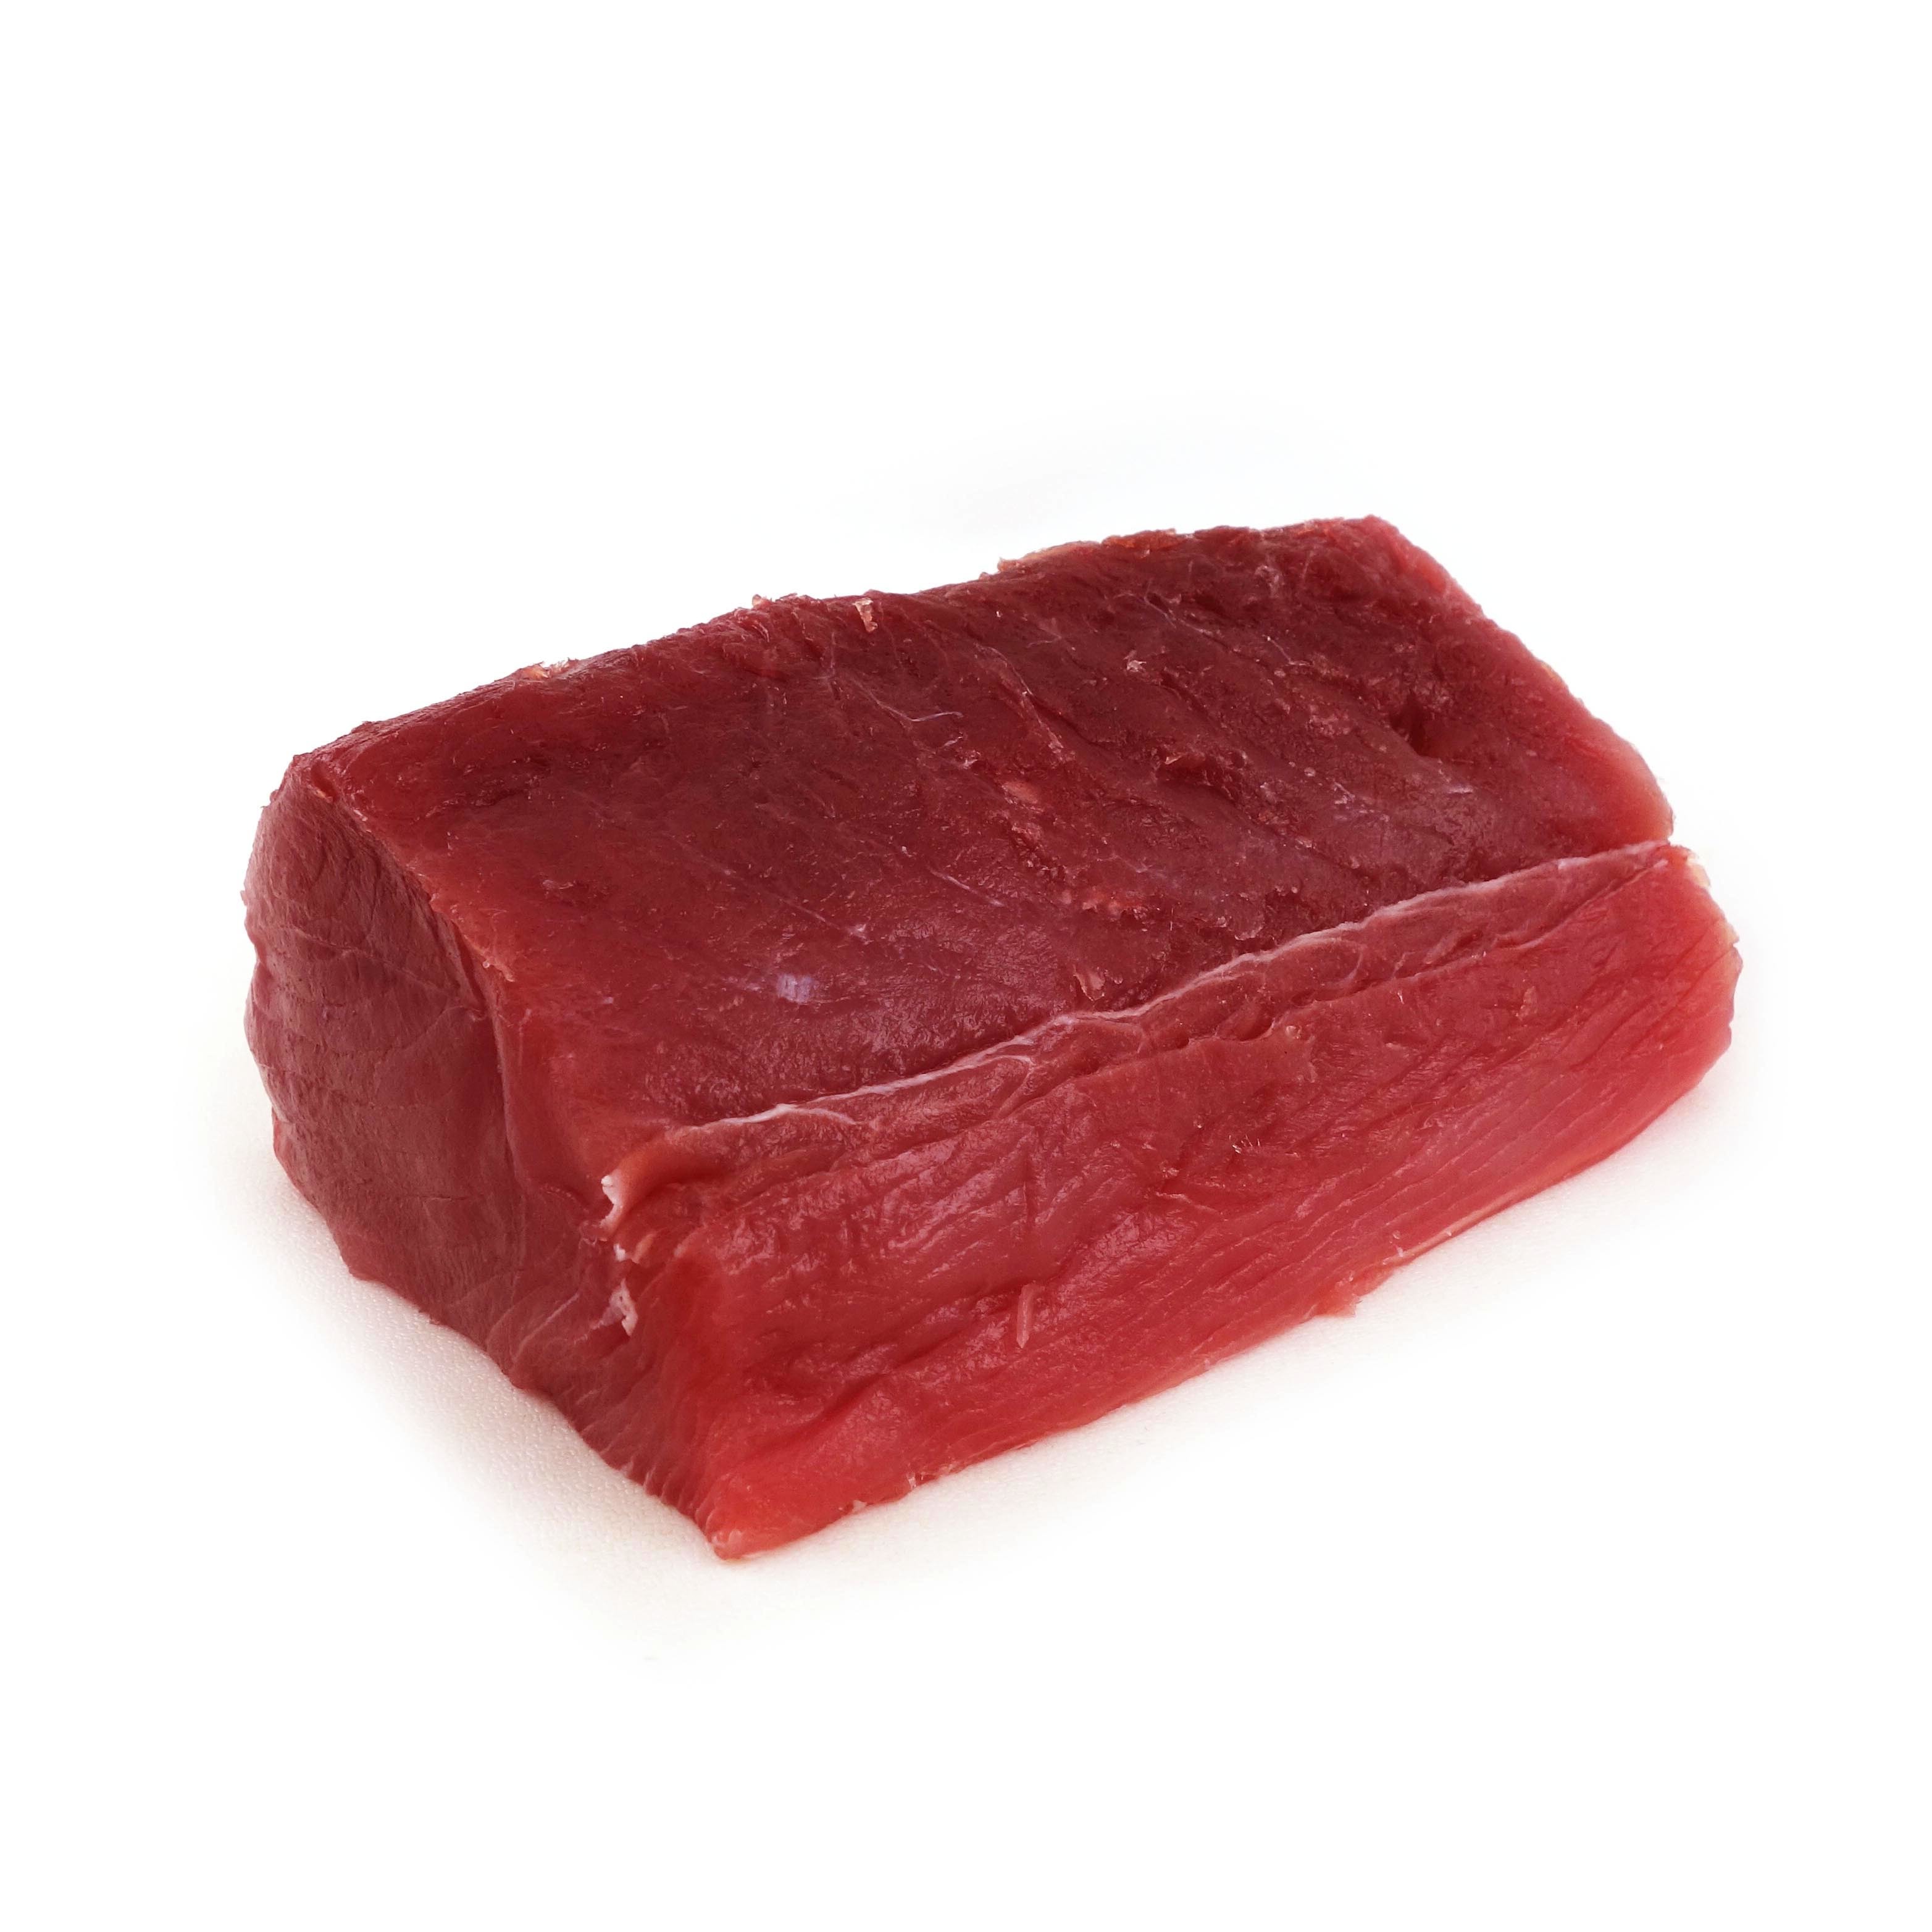 Ahi Yellowfin Tuna